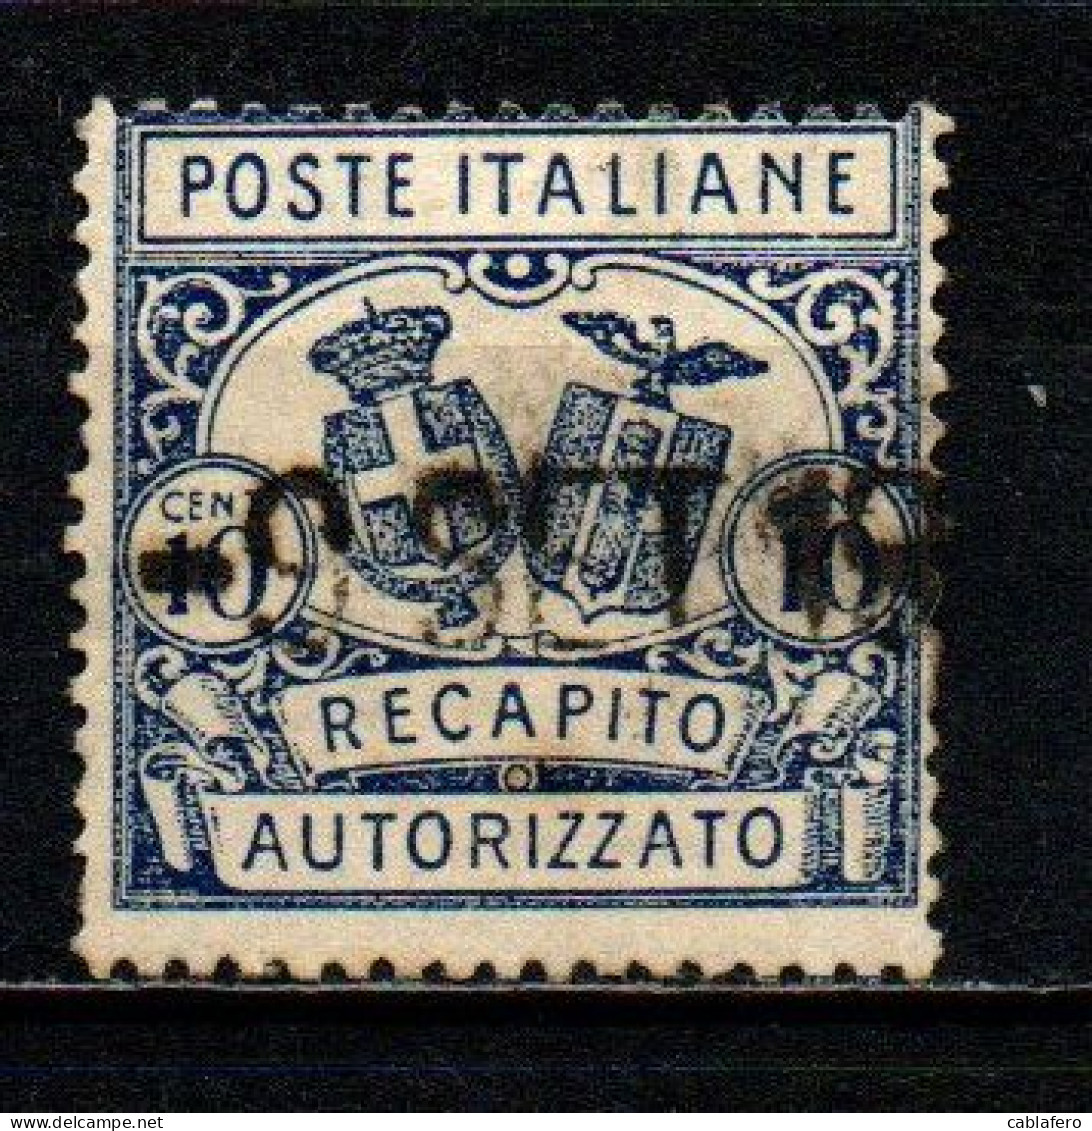 ITALIA REGNO - 1928 - RECAPITO AUTORIZZATO - STEMMI IN OVALE - DENTELLATURA 14 -  USATO - Pneumatic Mail